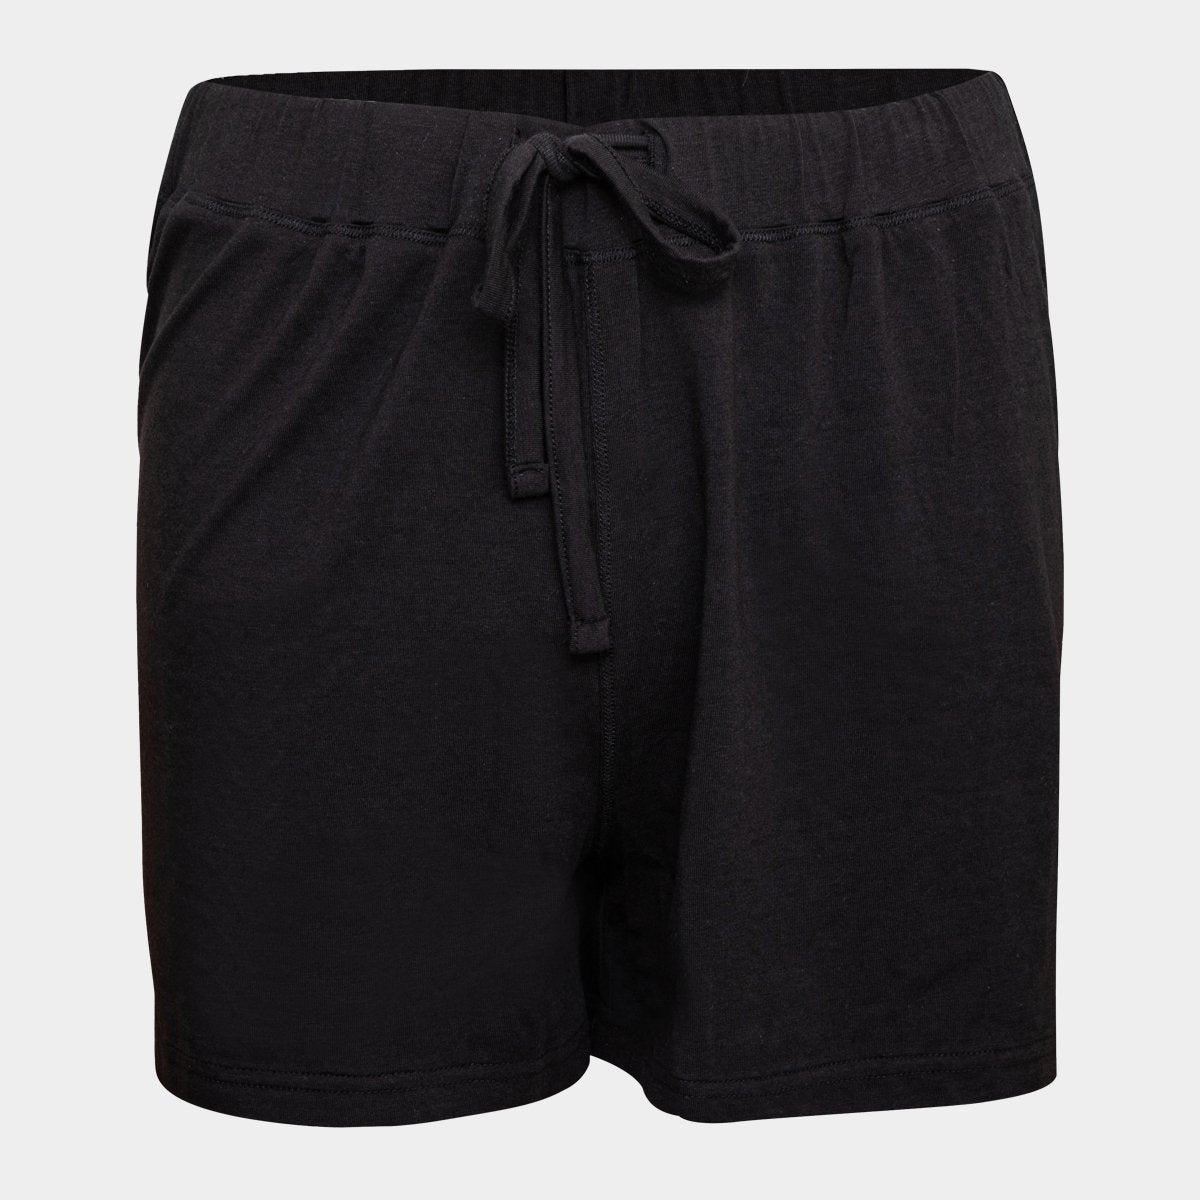 Sorte bambus shorts til dame fra JBS of Denmark, XL